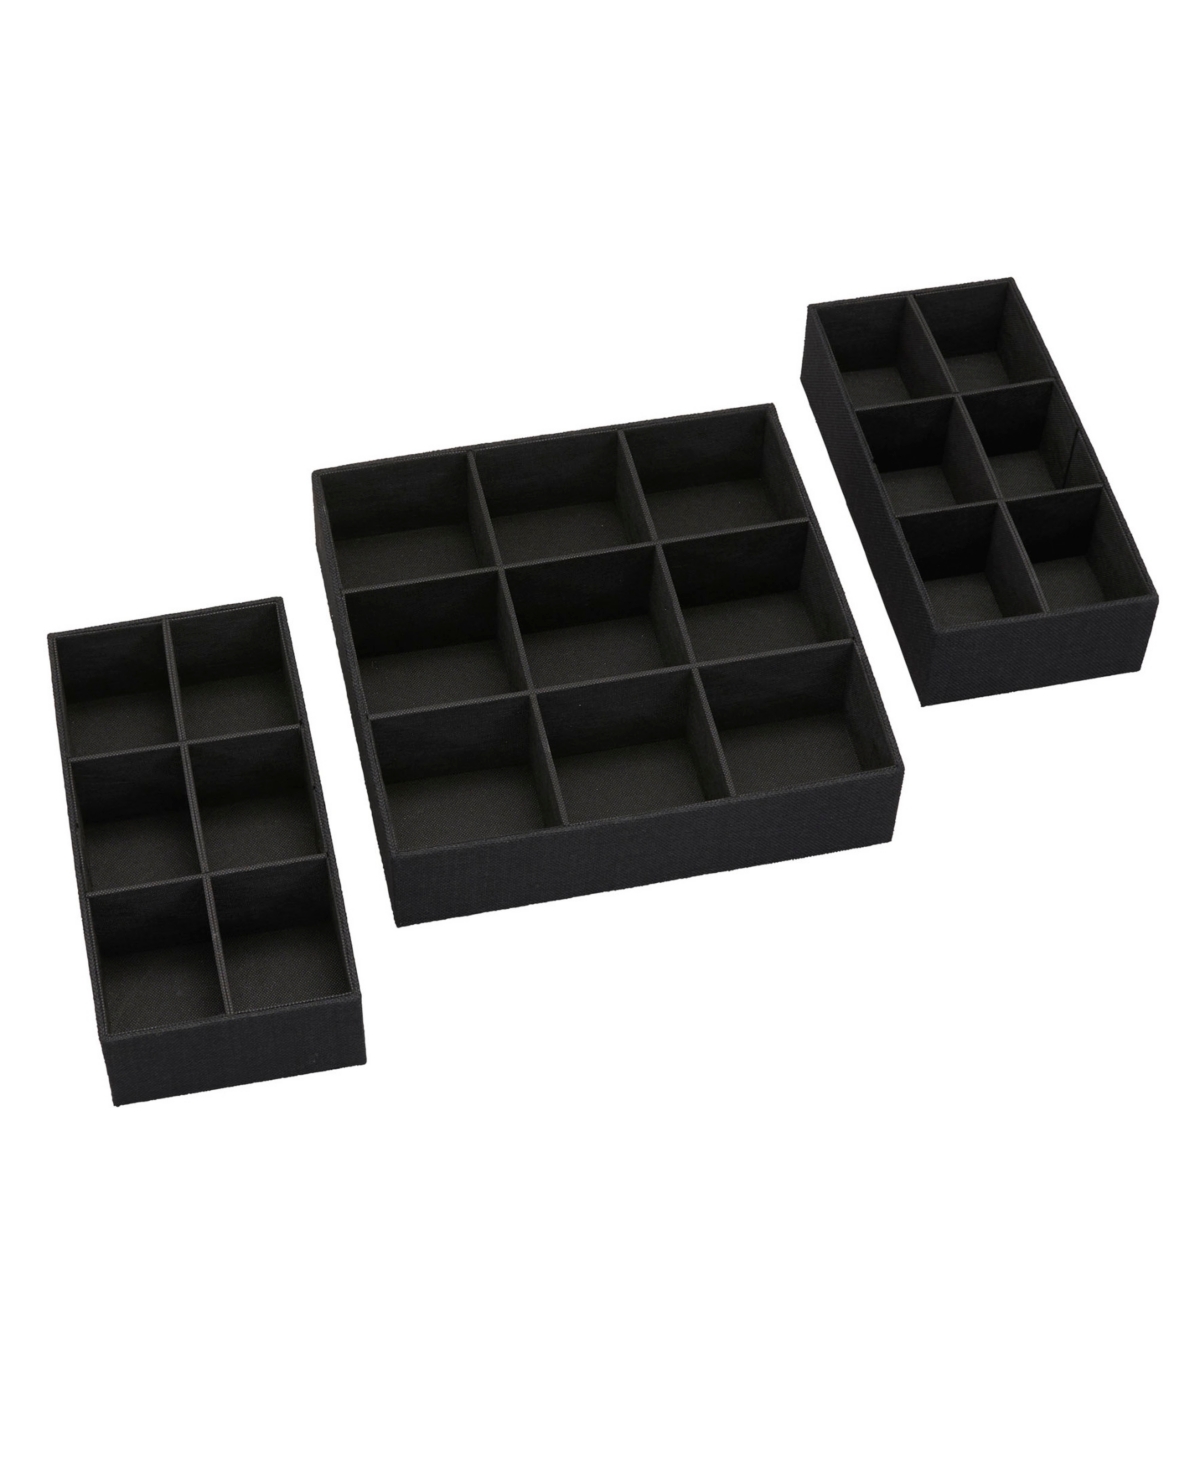 3 Piece Drawer Organizers Starter Set - Black